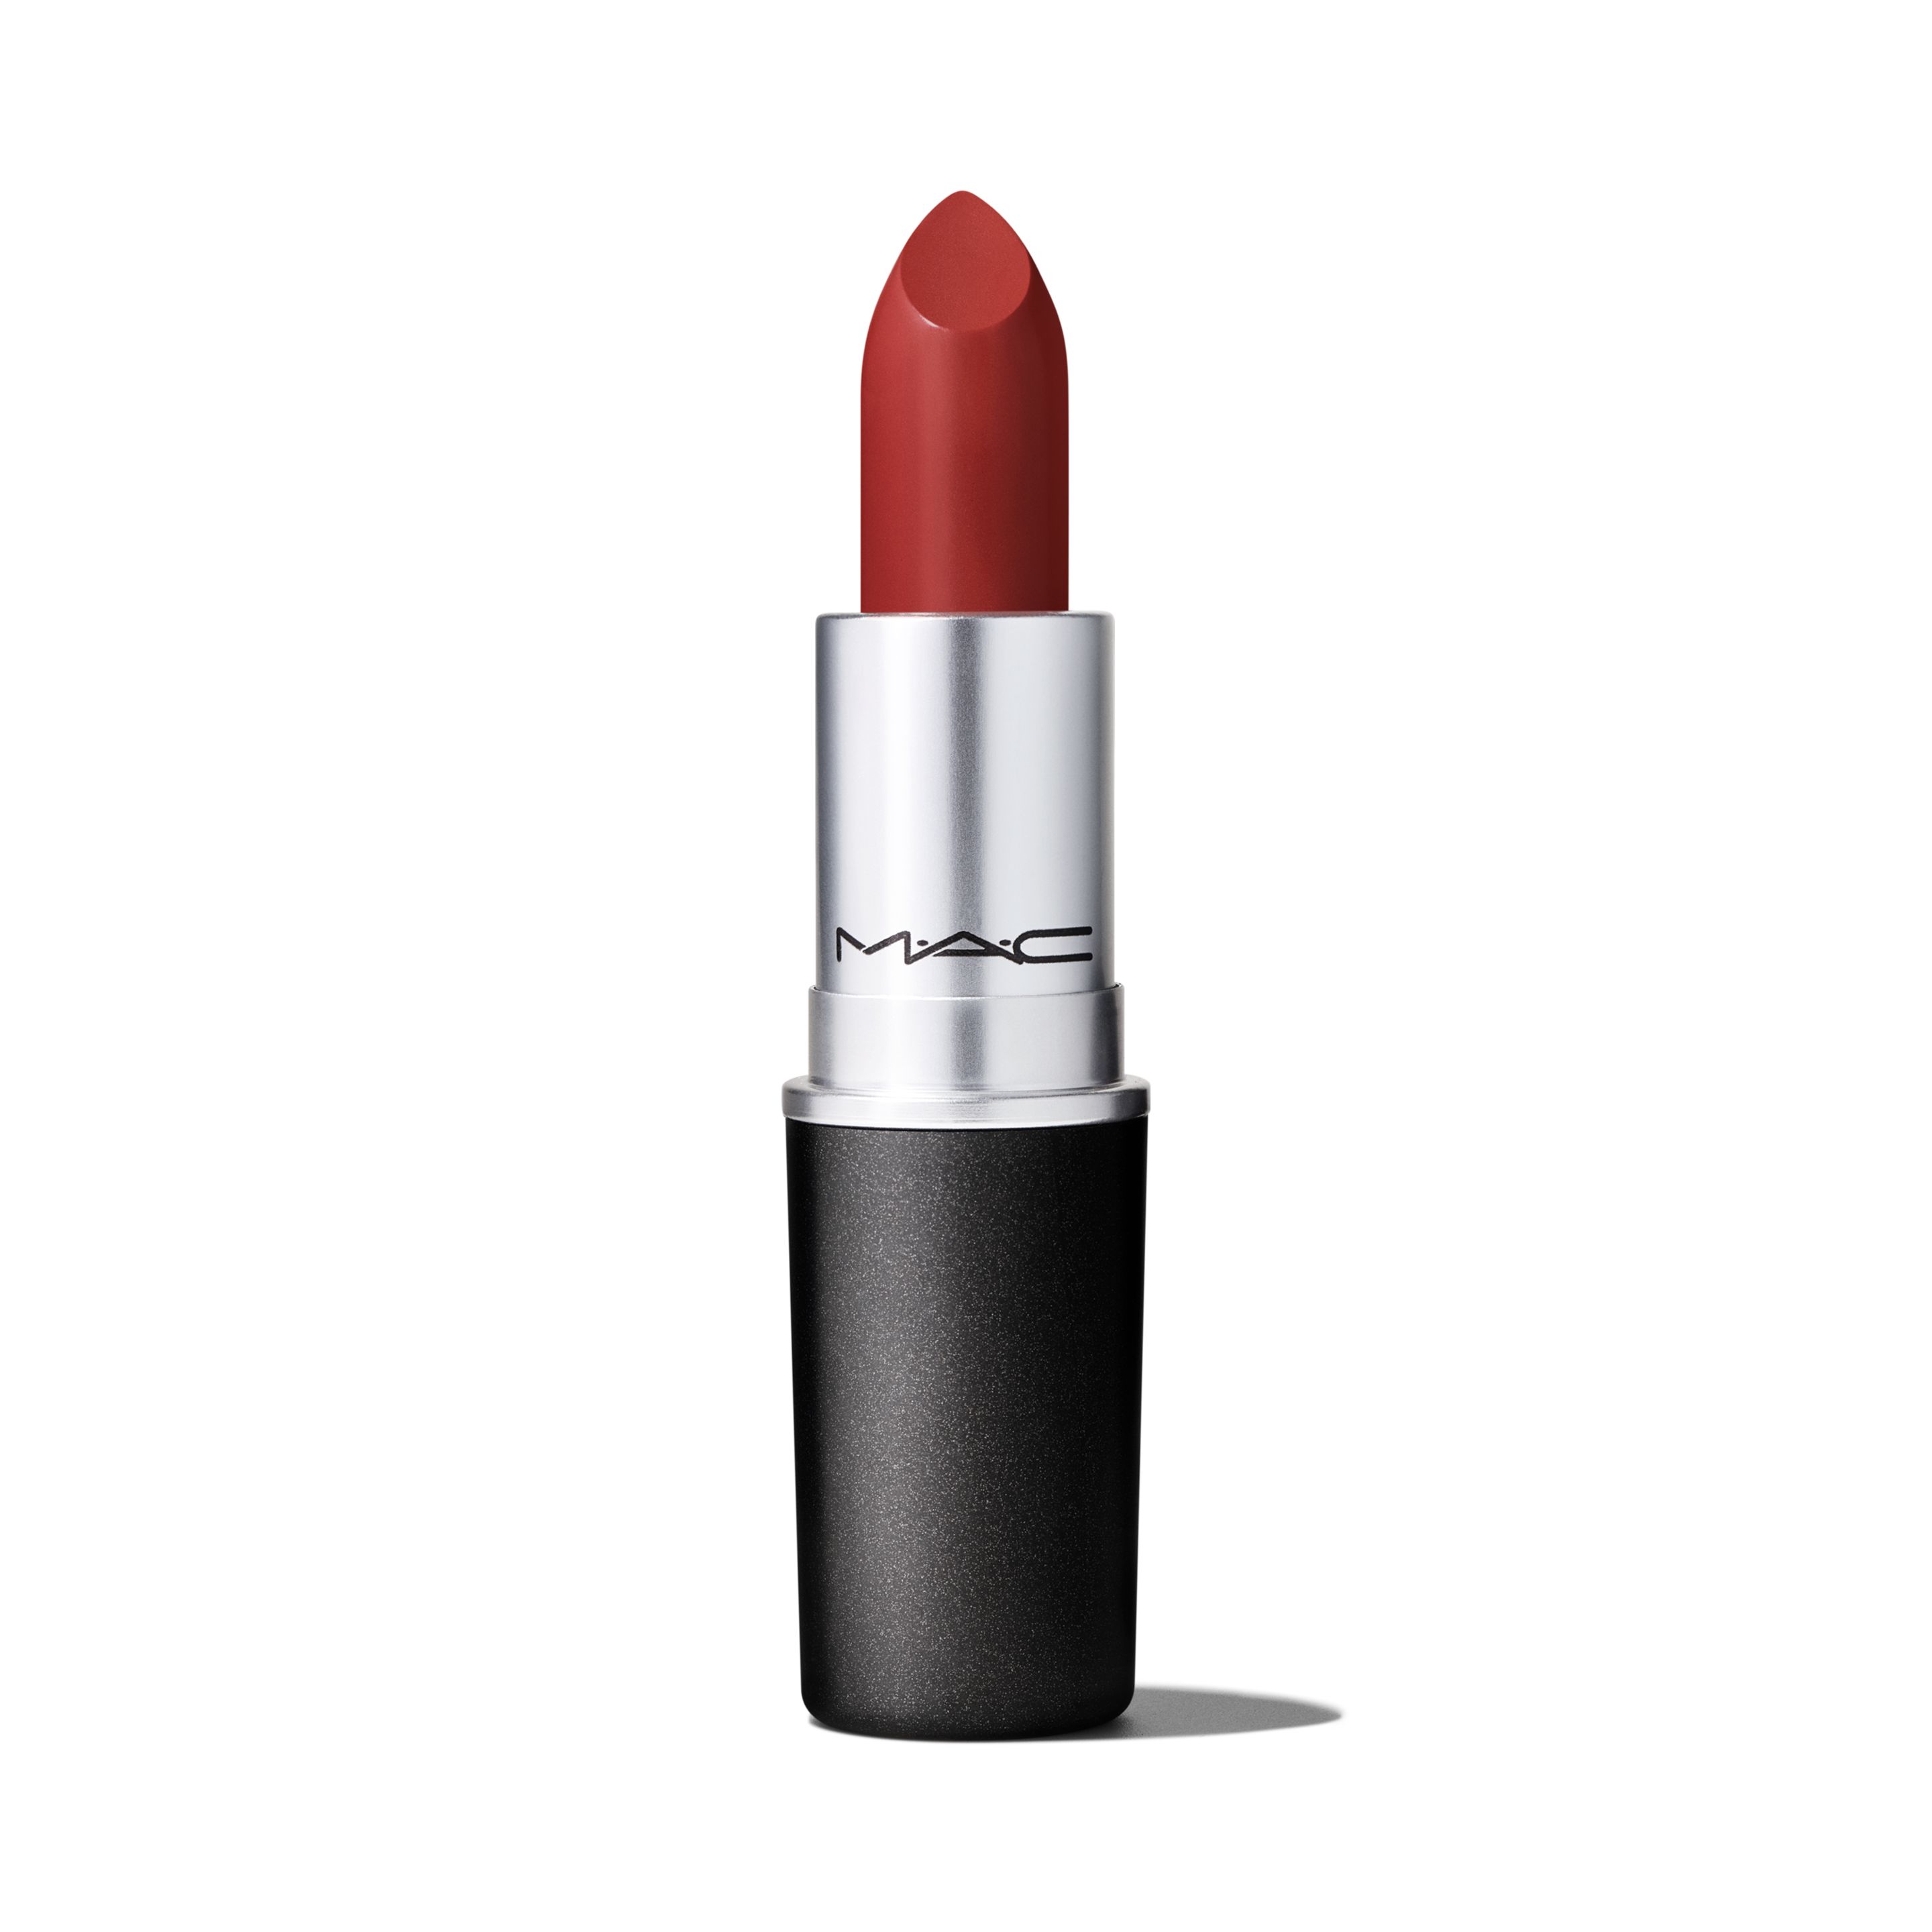 Помада для губ MAC Lipstick Amplified Creme кремовая, тон Dubonnet, 3 г помада для губ lollis lipstick тон 101 4 5г меркер косметика 48 опт